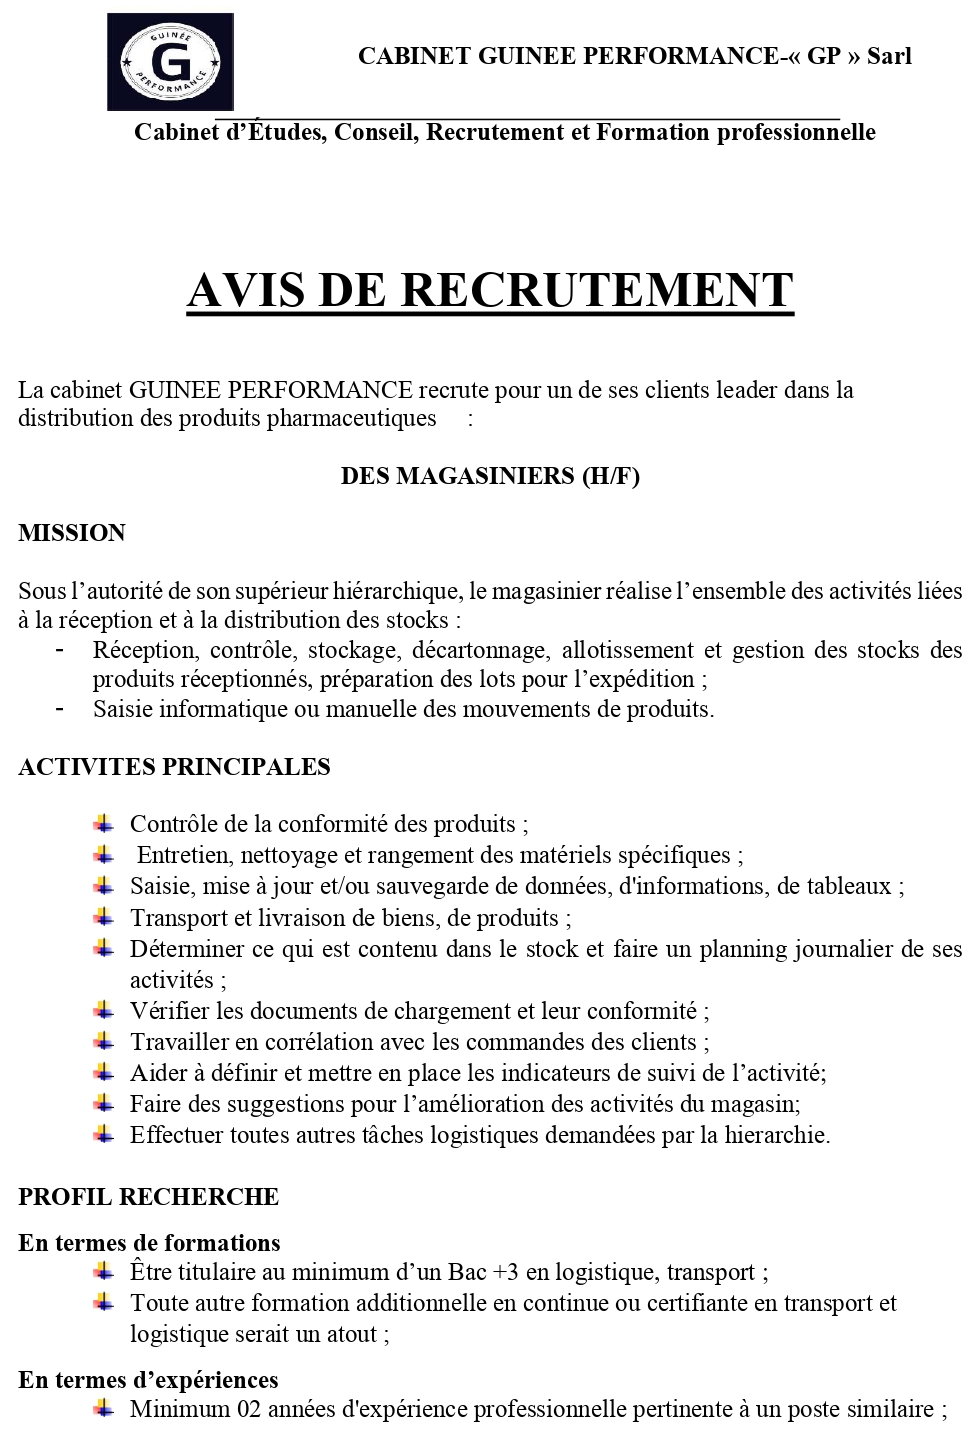 Avis De Recrutement Des Magasiniers (H/F) | page 1